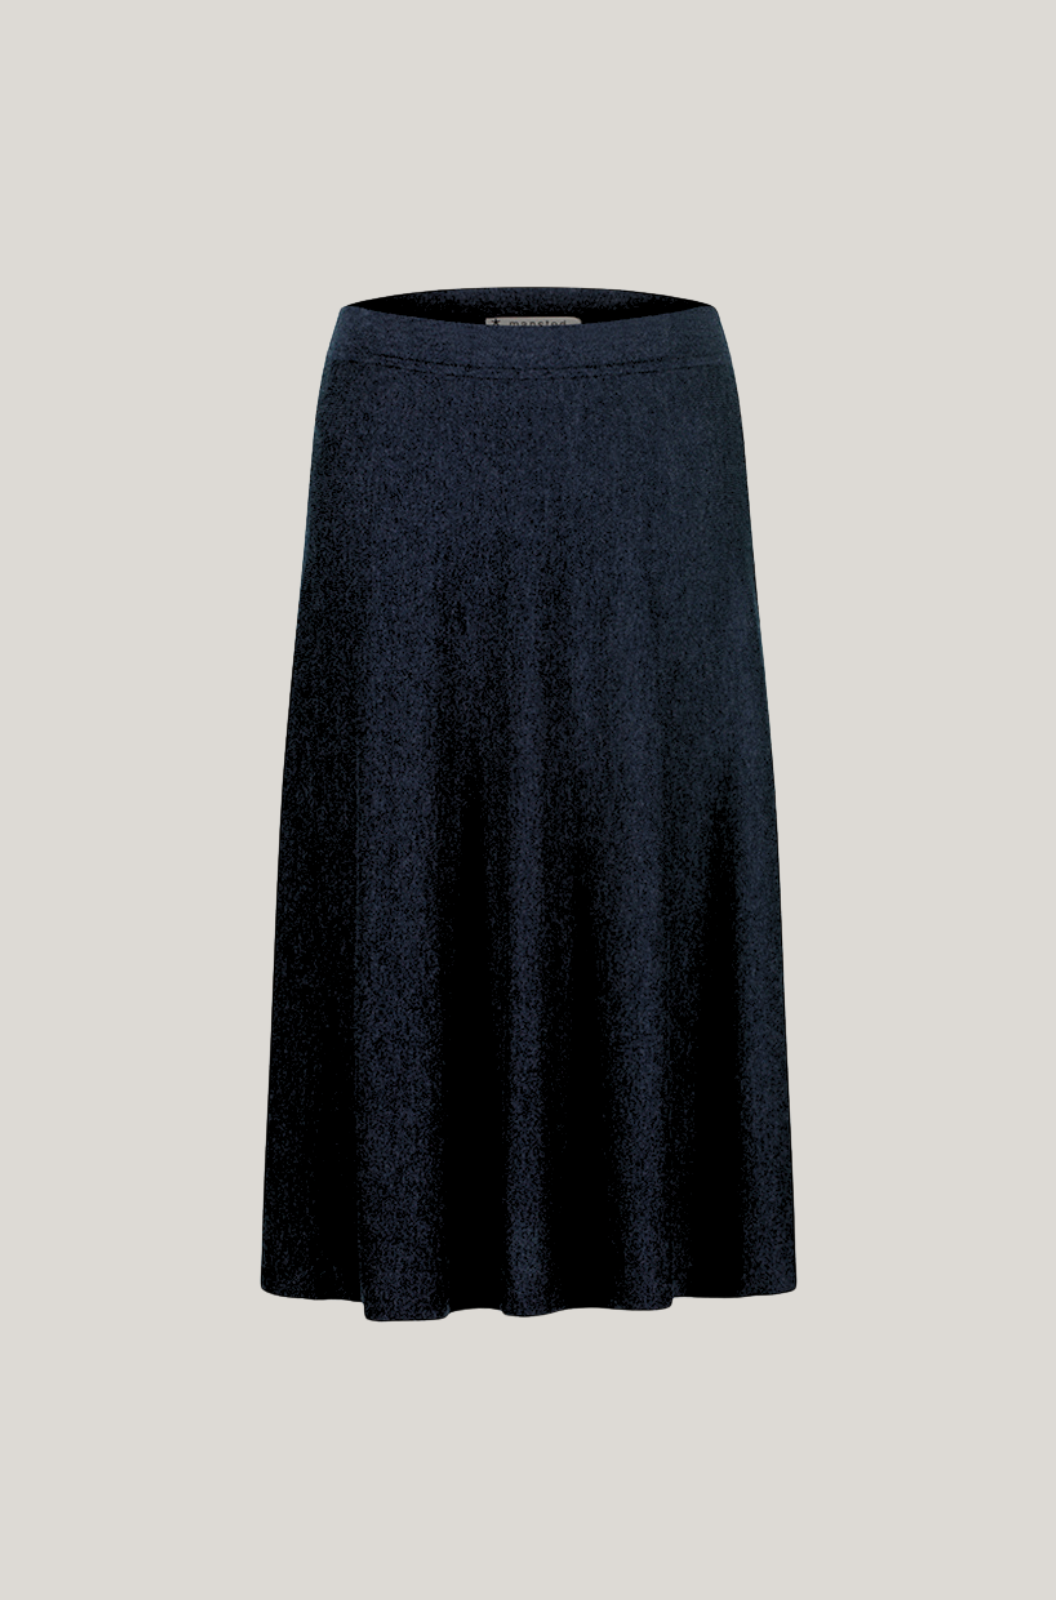 Mansted Denmark Ning Swing Skirt in Black